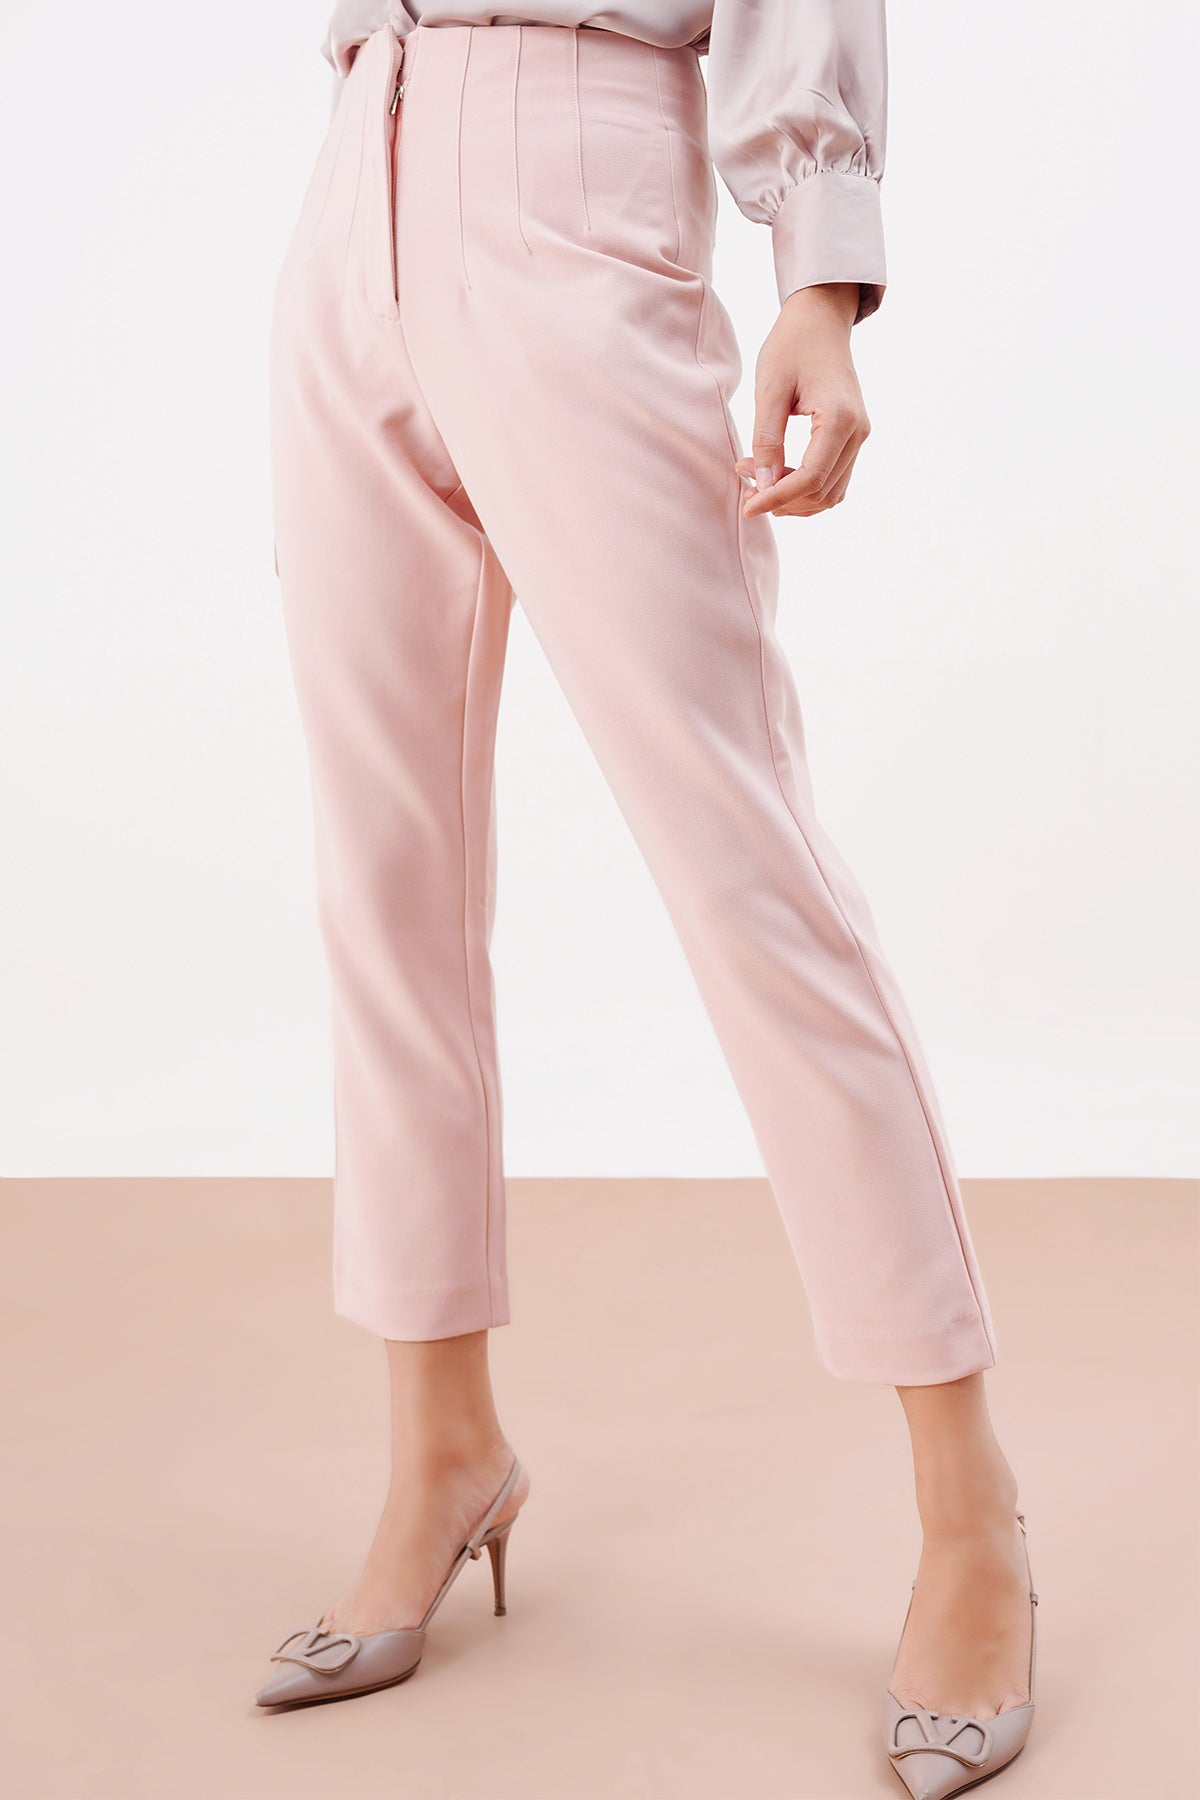 Basic HIgh Waisted Pants - Light Pink